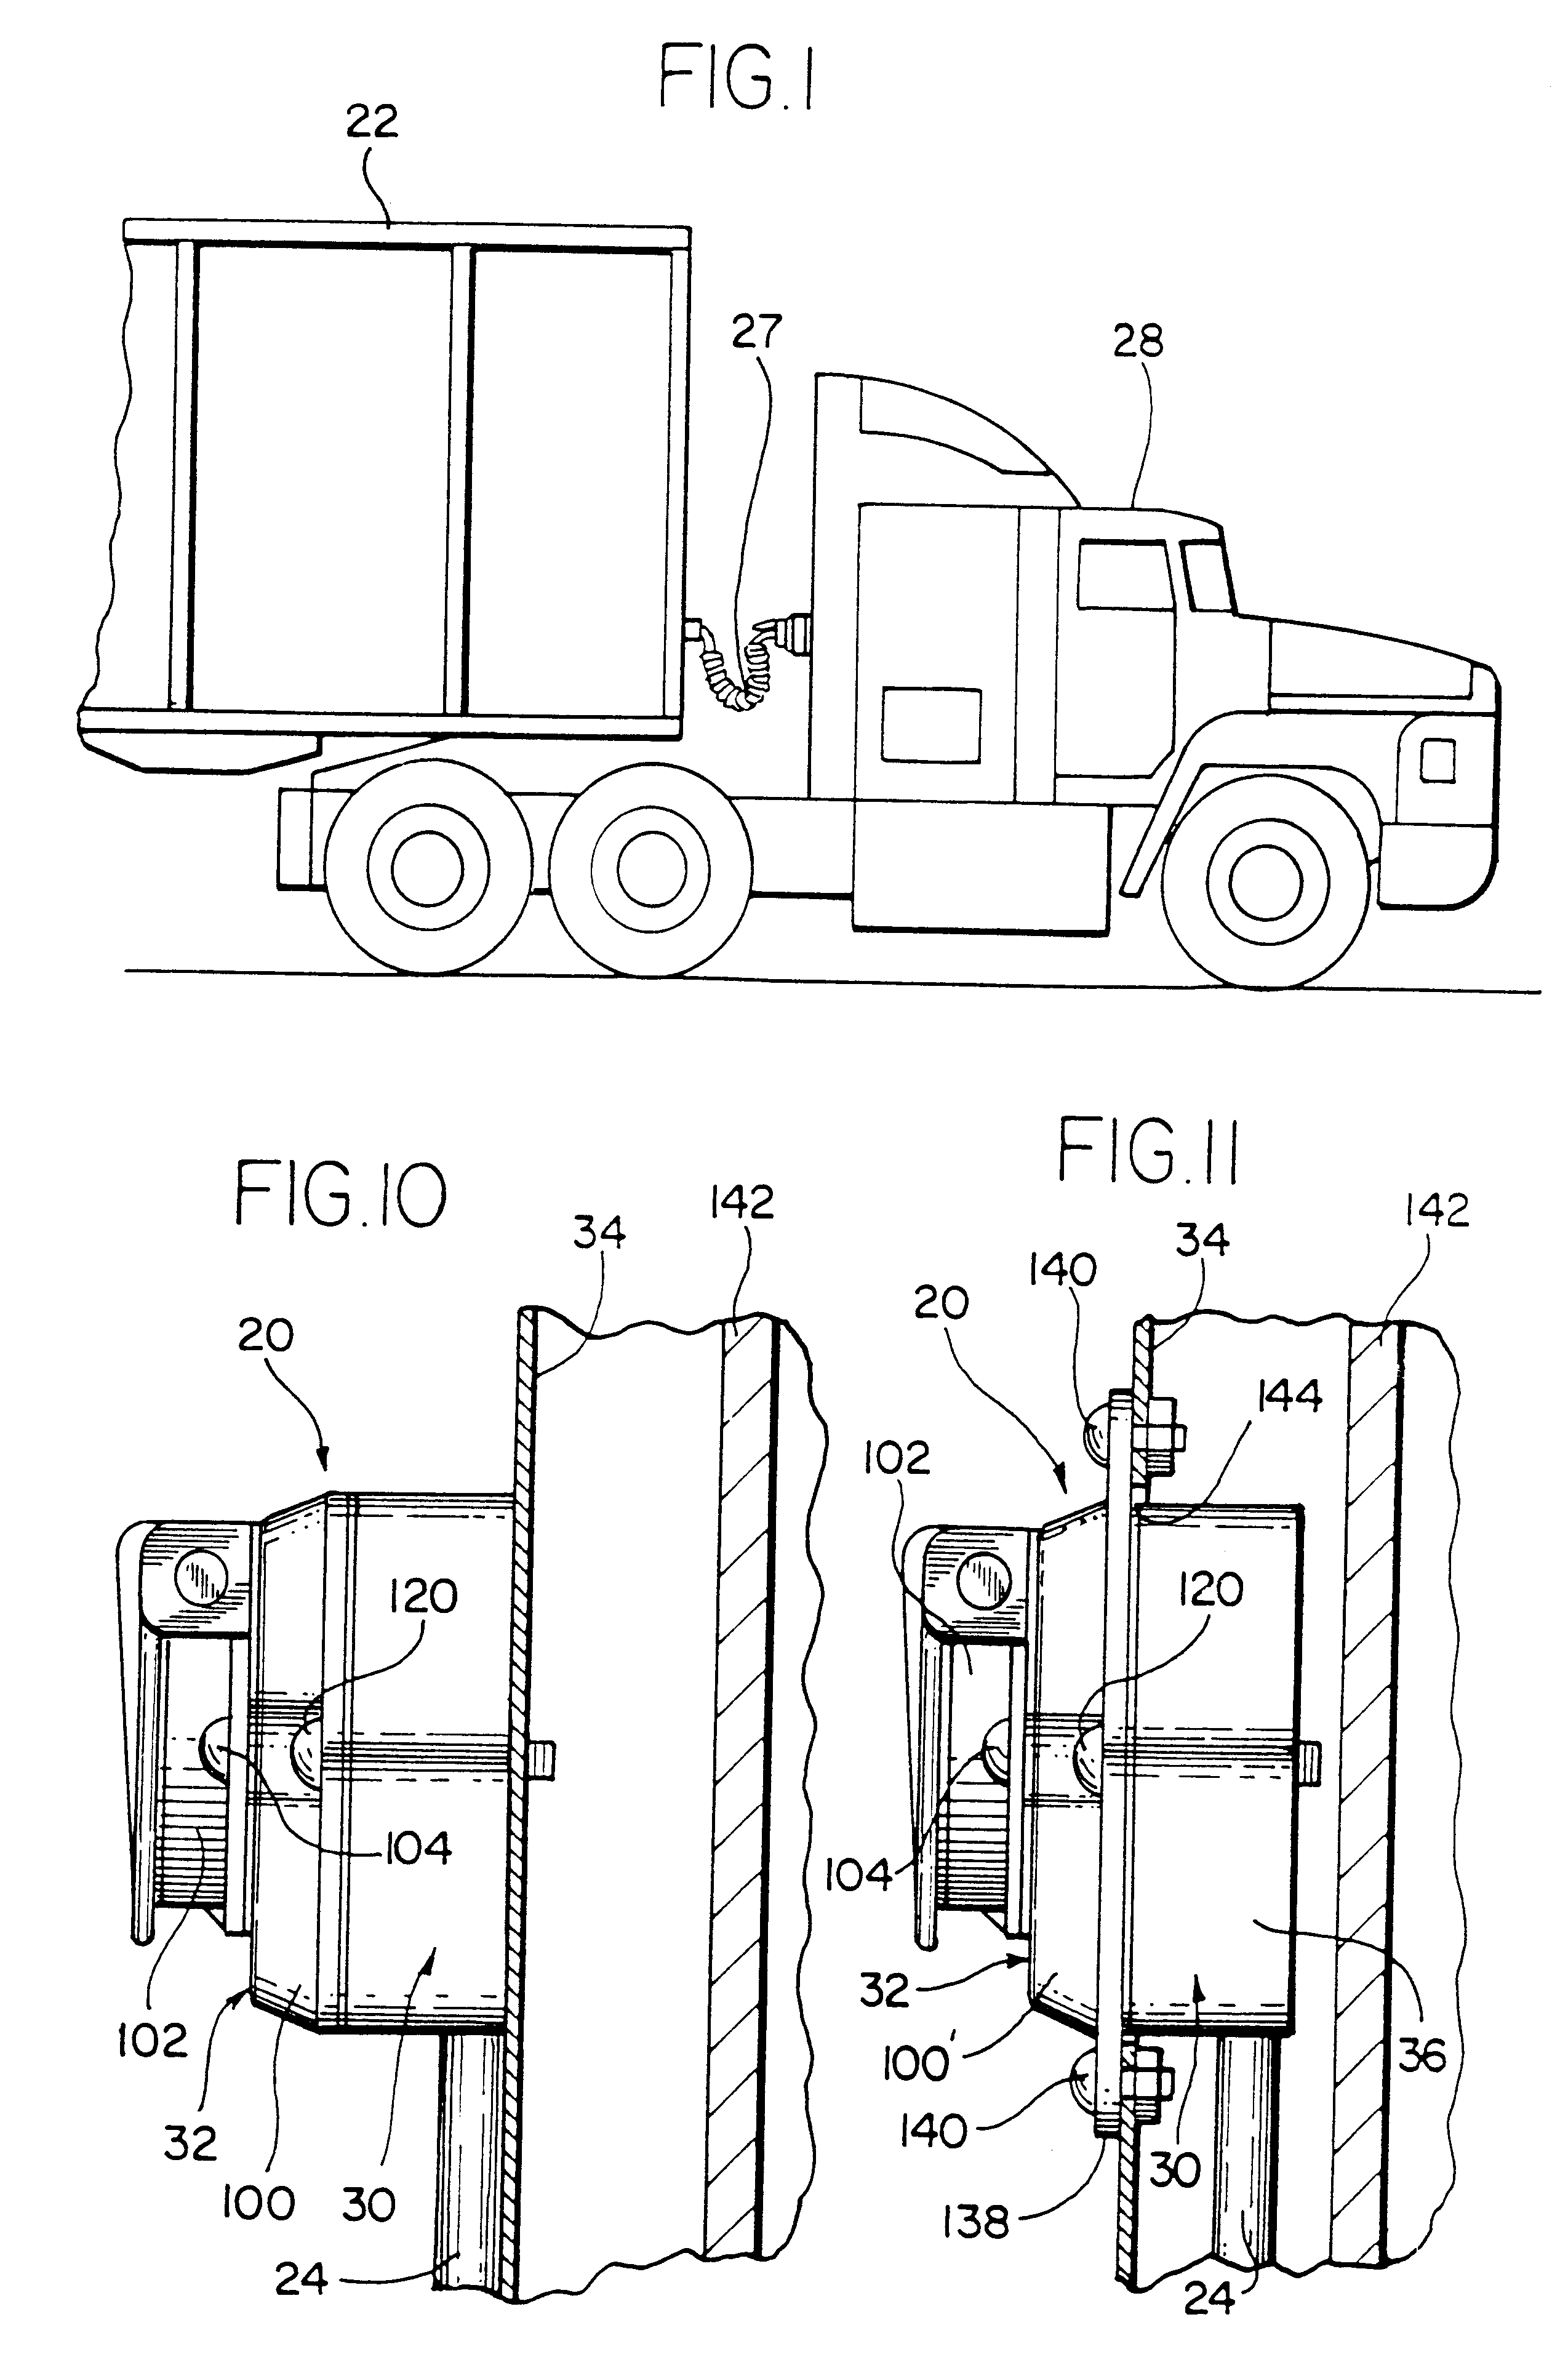 Seven-way trailer connector